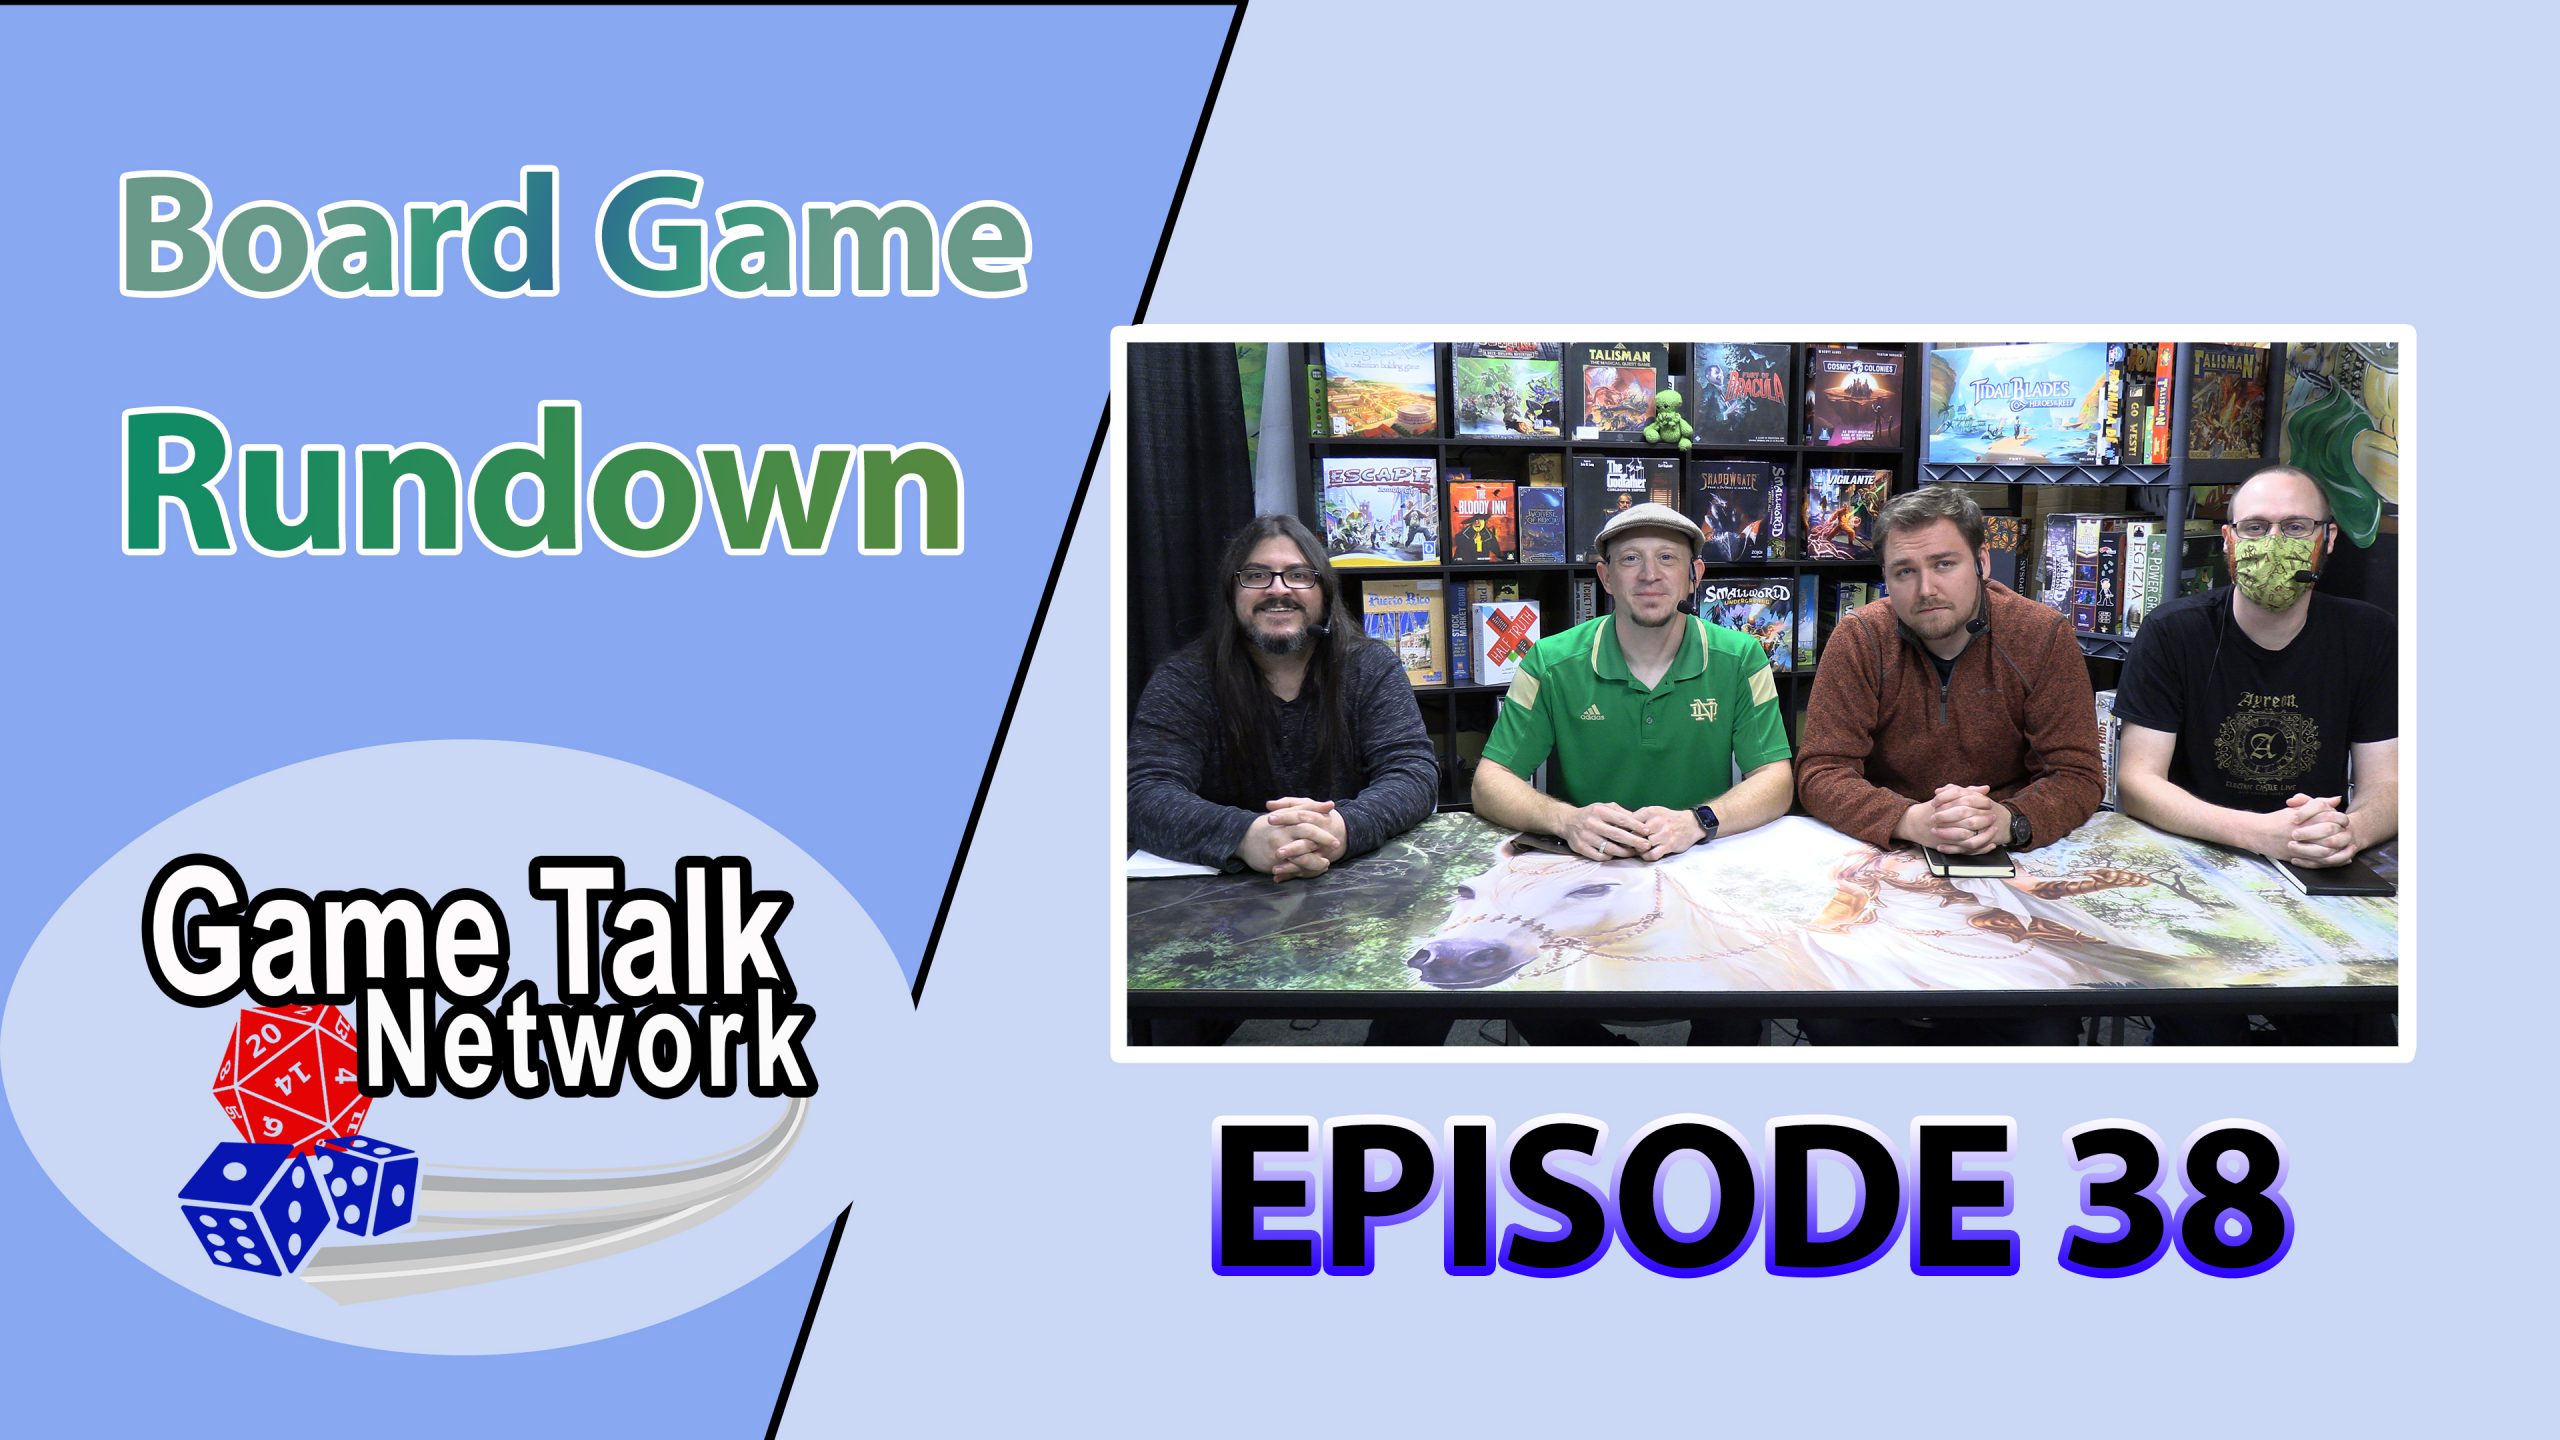 Board Game Rundown Episode 38: The BIG List Part 2